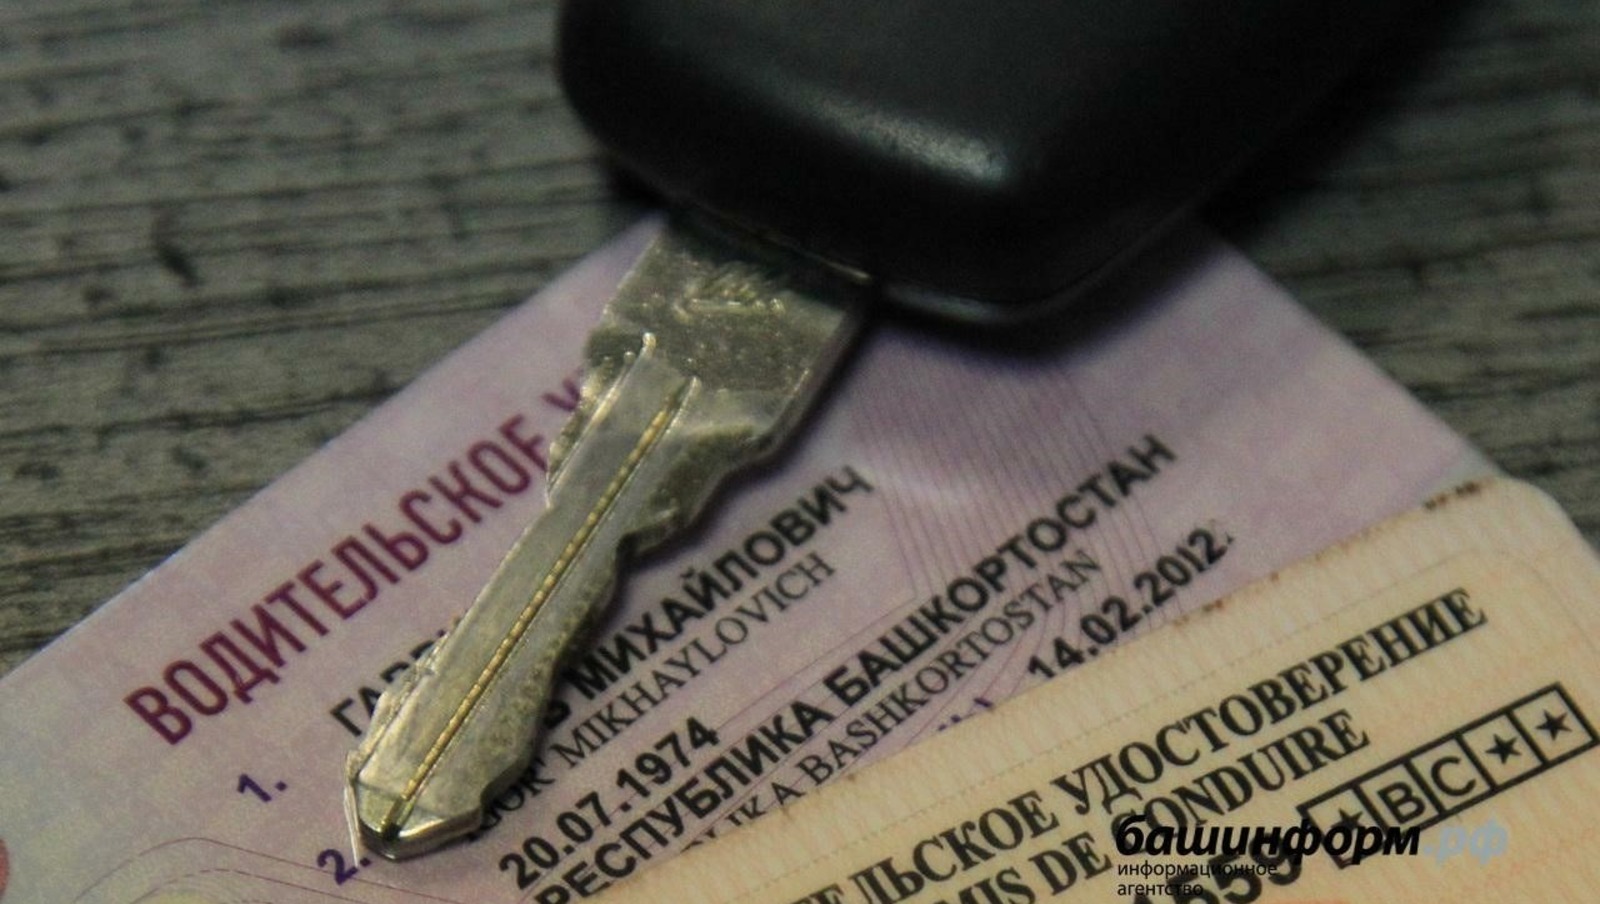 В России срок действия некоторых водительских прав продляется на три года